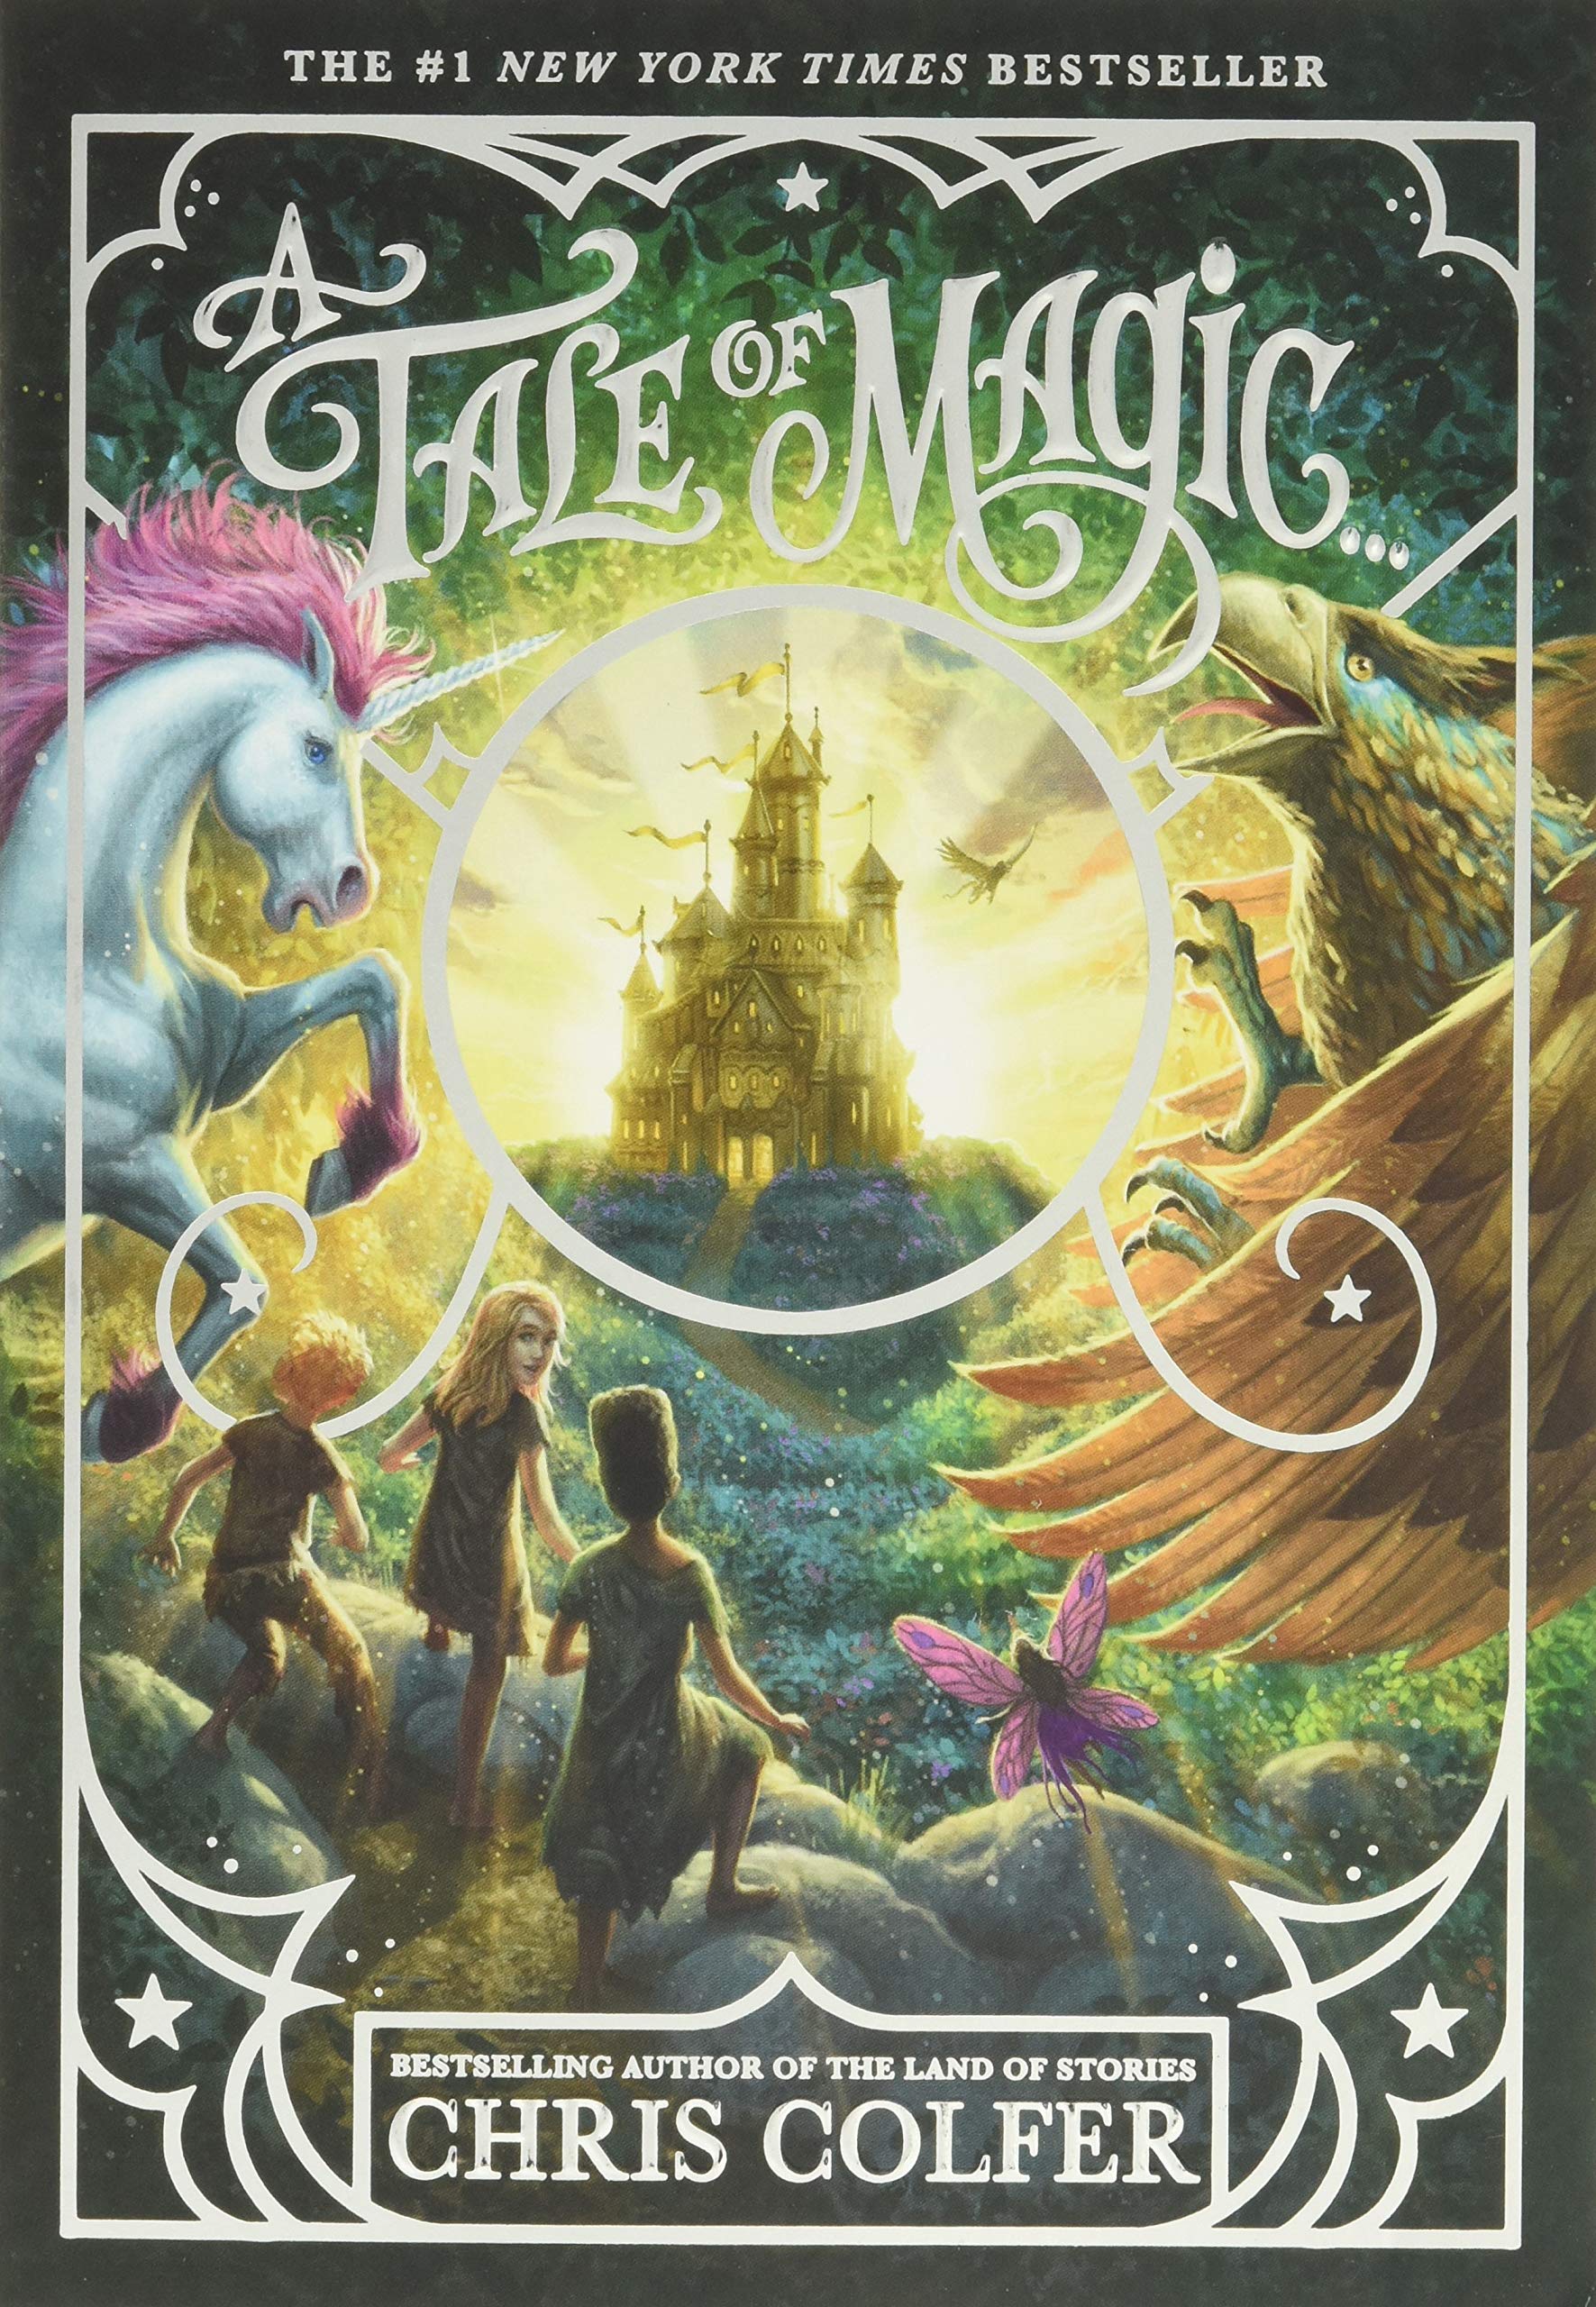 英文原版 魔法传奇1 儿童读物 Chris Colfer 异世界童话之旅作者 A Tale of Magic... 故事之地 书籍/杂志/报纸 原版其它 原图主图